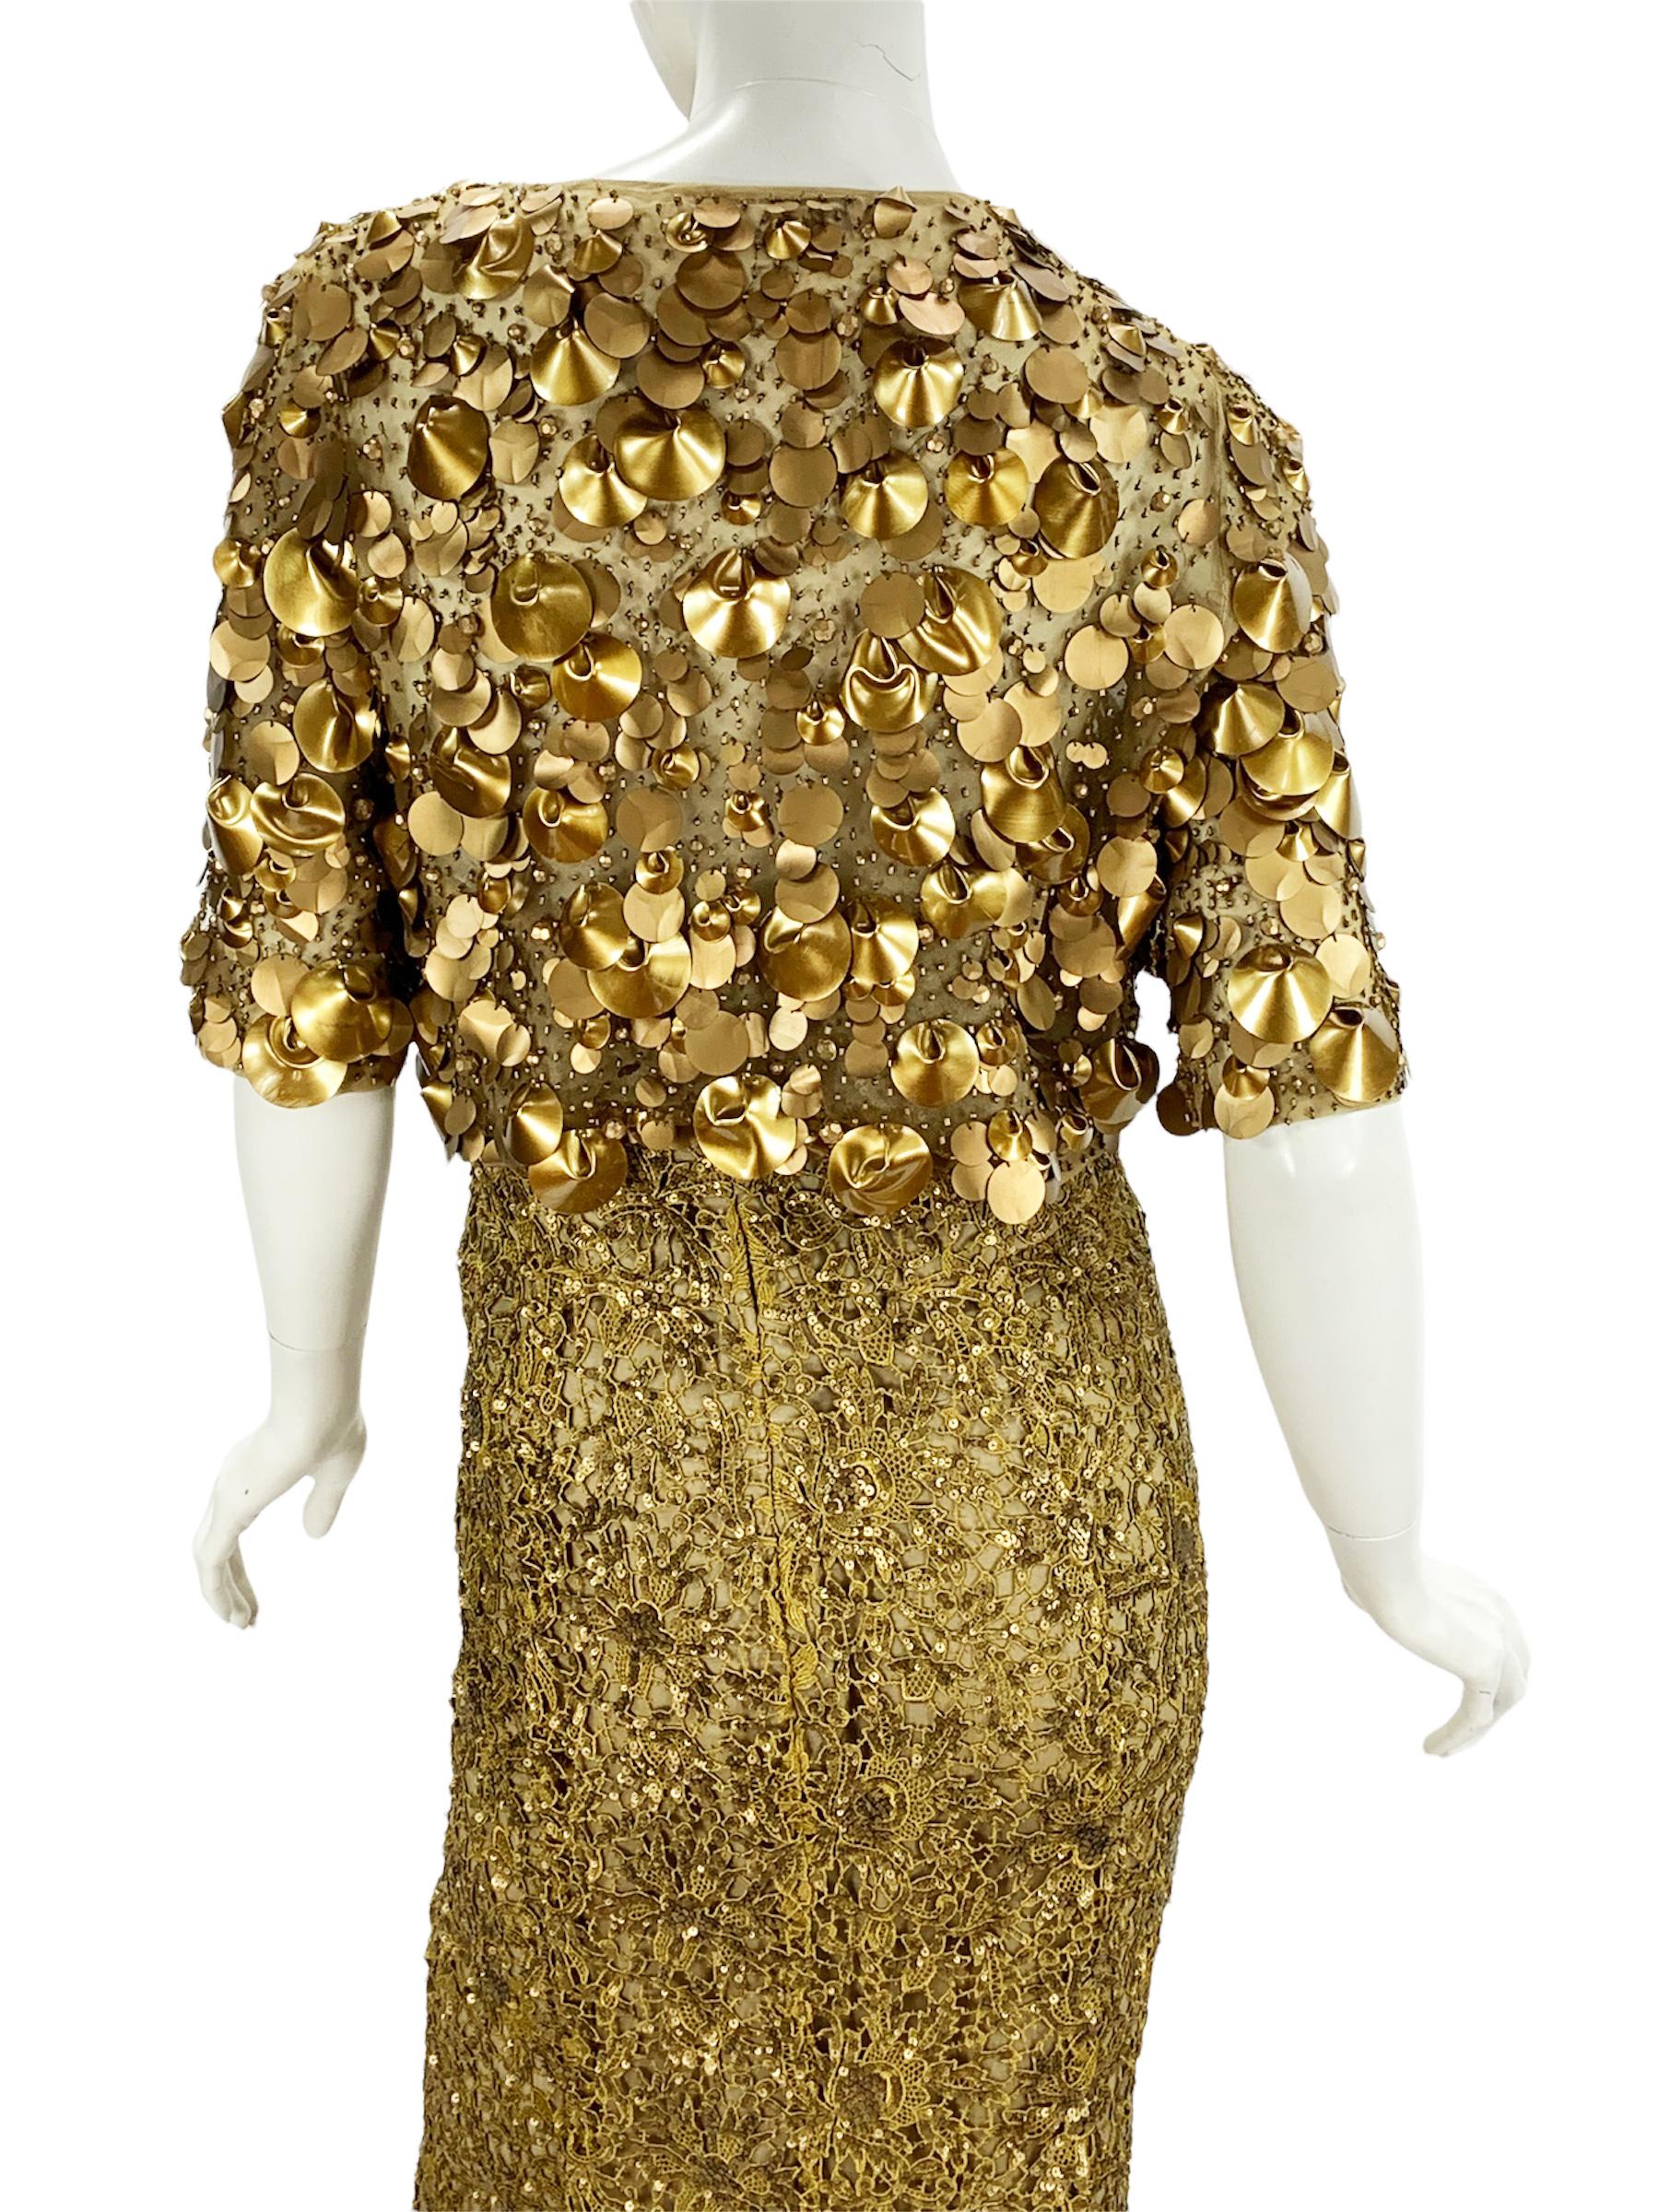 Oscar De La Renta PF 2012 Gold Lace Sequin Embellished Dress Gown + Jacket  For Sale 1